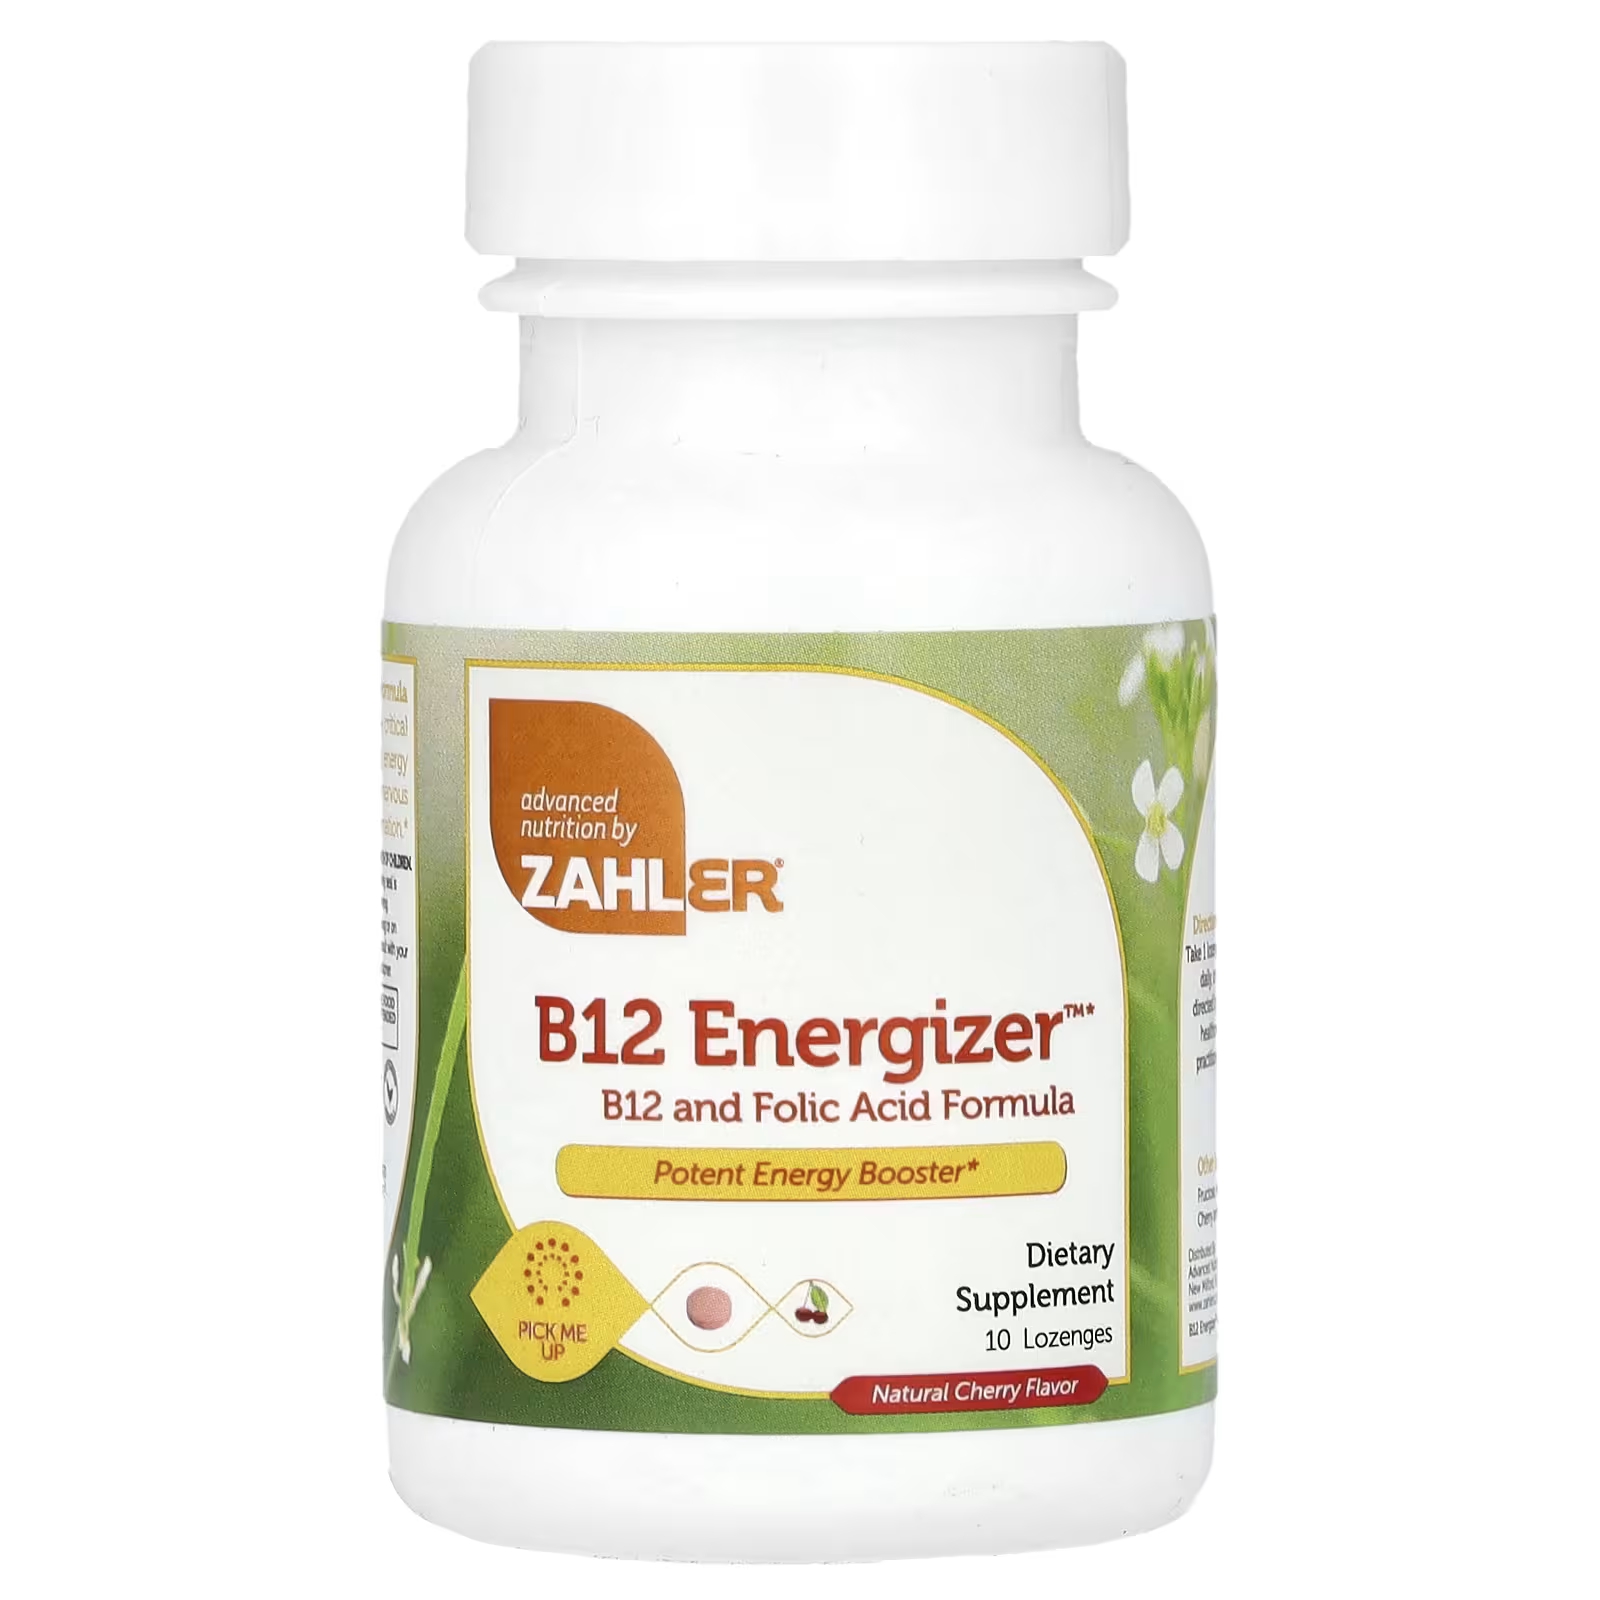 Пищевая добавка Zahler B12 Energizer натуральная вишня, 10 пастилок витамин b12 и фолиевая кислота zahler b12 energizer с натуральным вишневым вкусом 90 пастилок